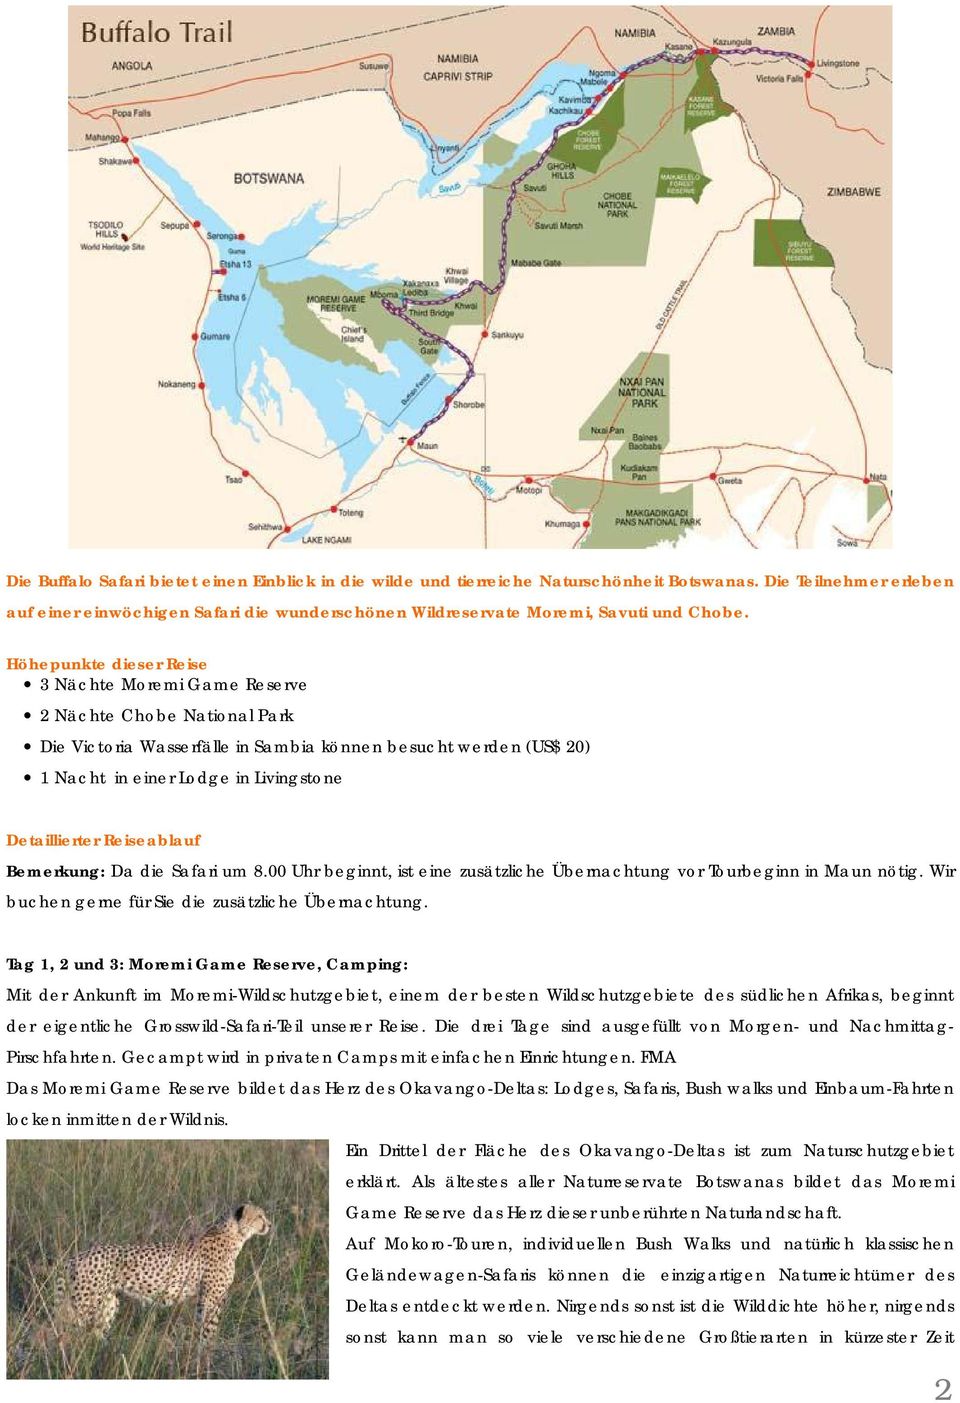 Höhepunkte dieser Reise 3 Nächte Moremi Game Reserve 2 Nächte Chobe National Park Die Victoria Wasserfälle in Sambia können besucht werden (US$ 20) 1 Nacht in einer Lodge in Livingstone Detaillierter